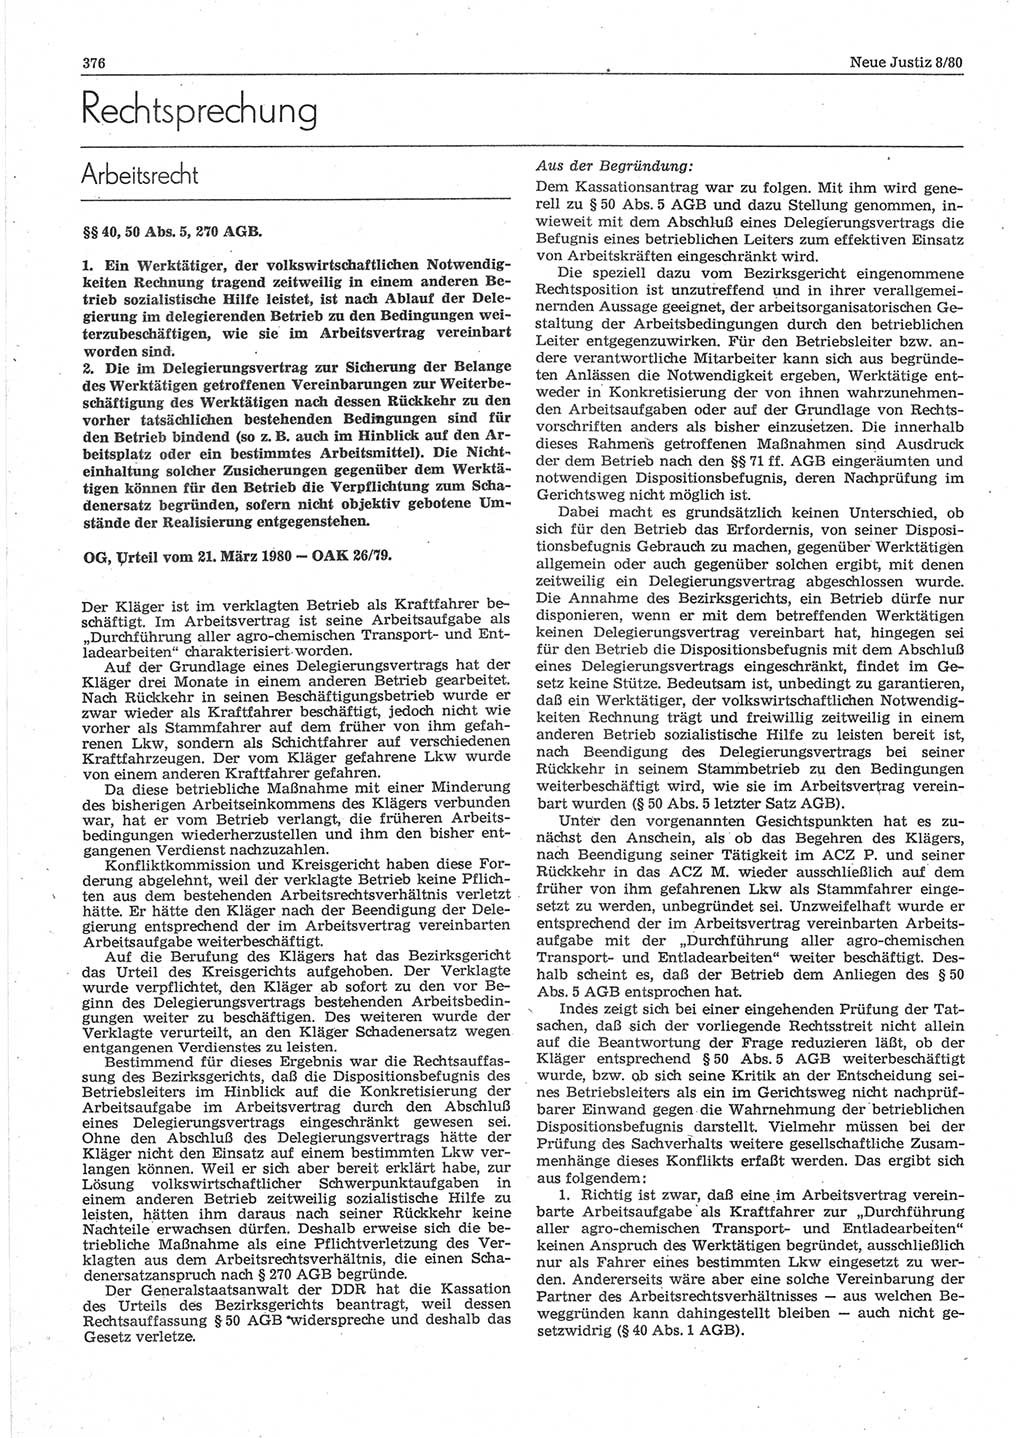 Neue Justiz (NJ), Zeitschrift für sozialistisches Recht und Gesetzlichkeit [Deutsche Demokratische Republik (DDR)], 34. Jahrgang 1980, Seite 376 (NJ DDR 1980, S. 376)